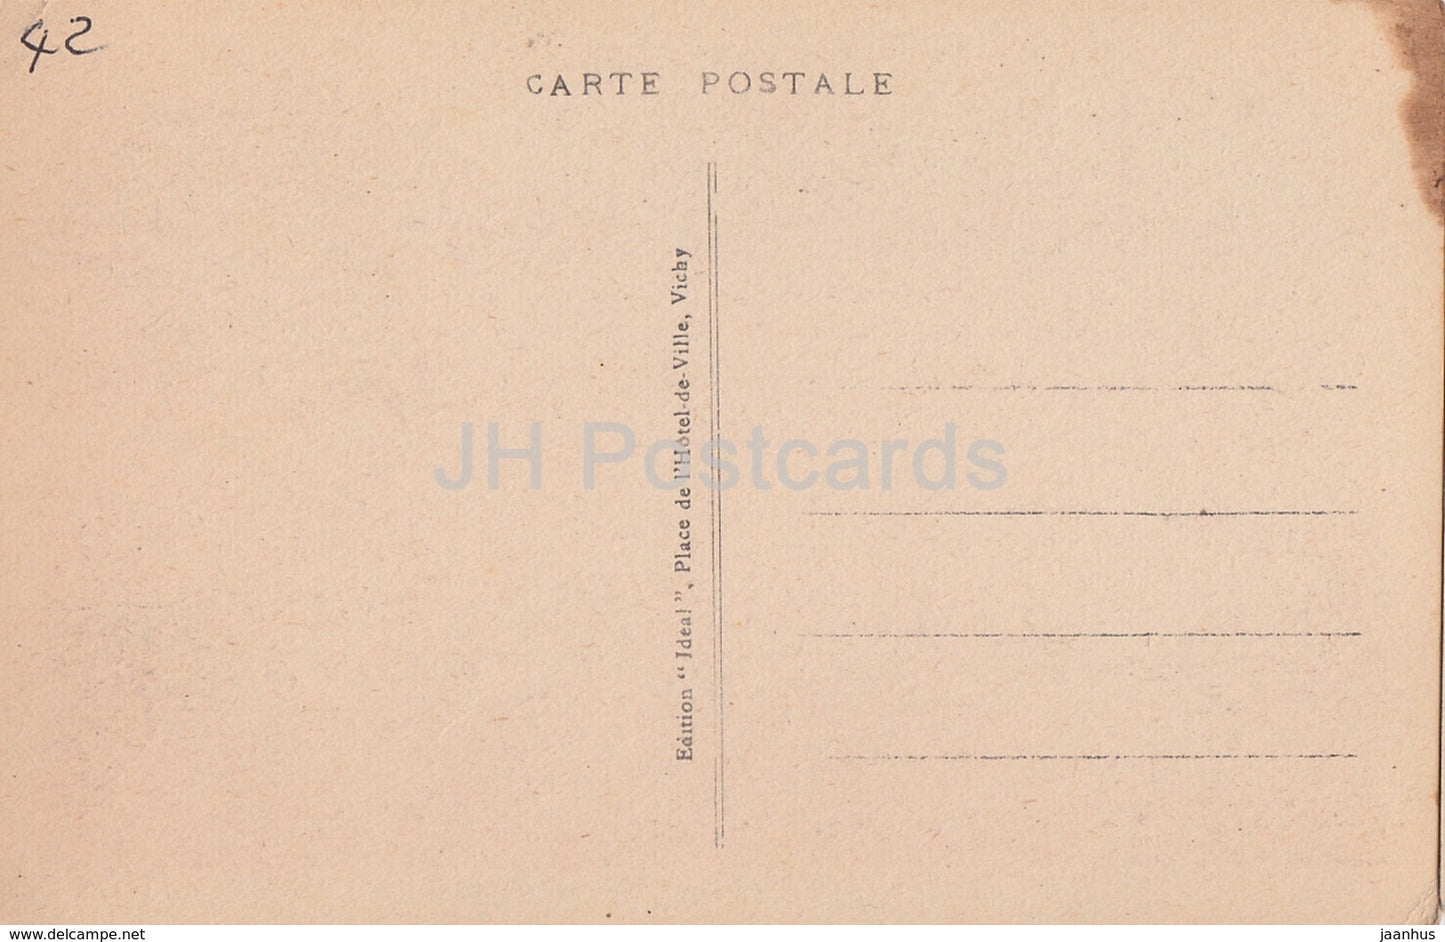 Le Coteau - Chateau de Renneville - castle - 5107 - old postcard - France - unused